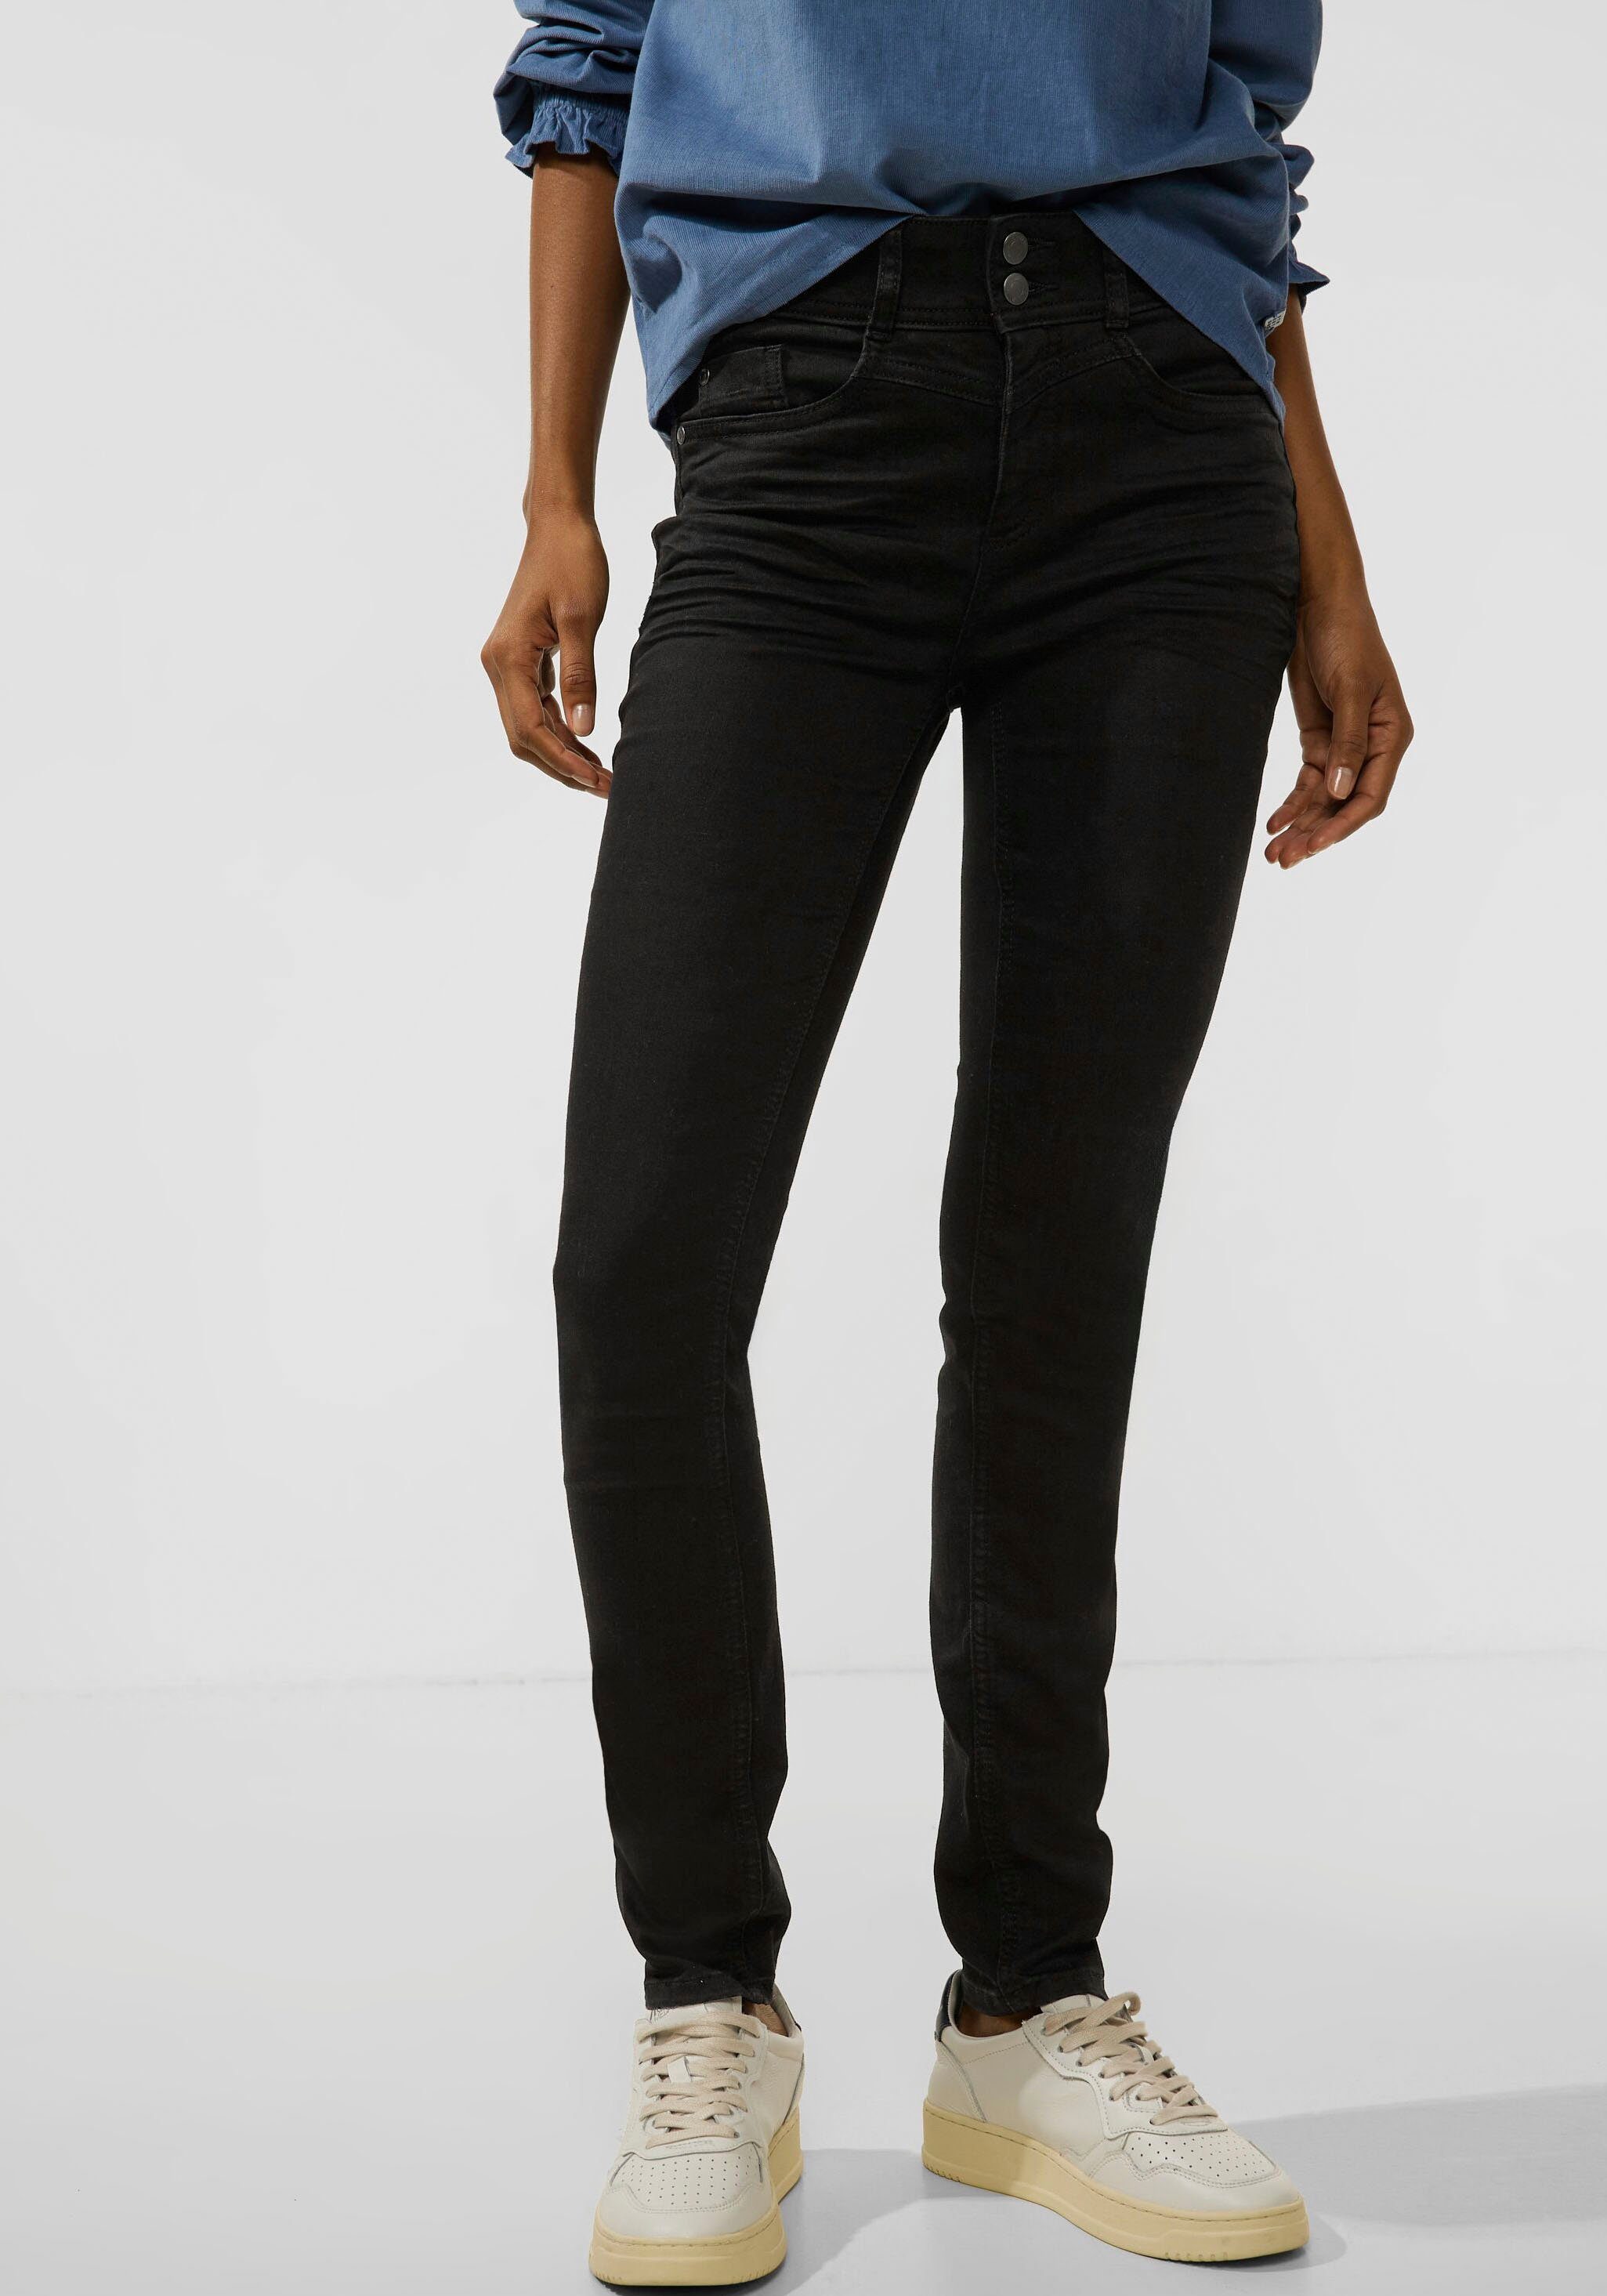 jedem 5-Pocket-Stil, Perfekt kombinierbar ONE mit im Slim-fit-Jeans STREET Oberteil